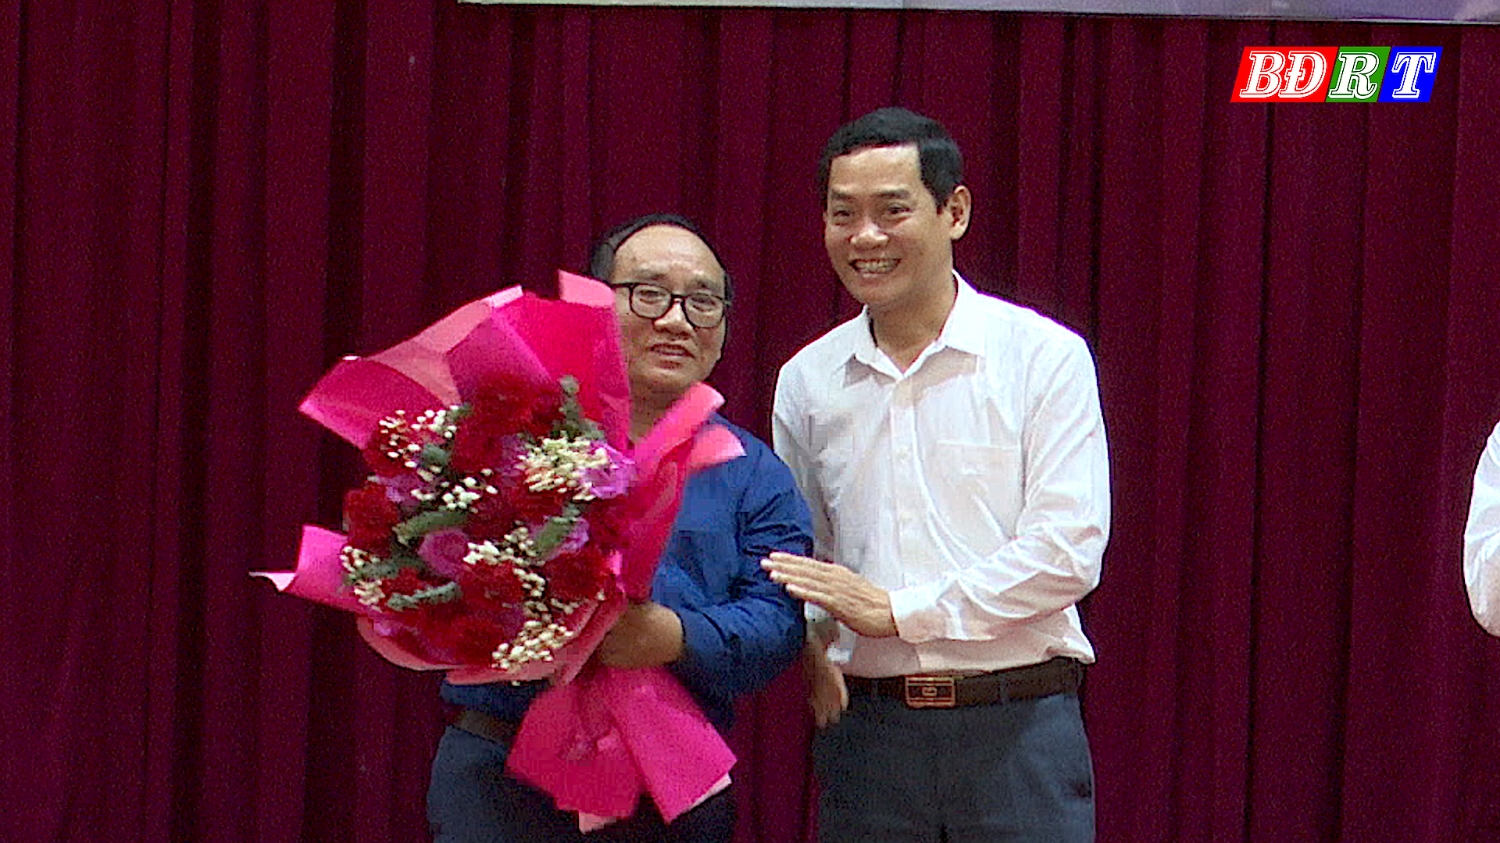 Đồng chí Nguyễn Văn Tình ThUV Phó Chủ tịch UBND thị xã tặng hoa Nhà thơ Trần Đăng Khoa